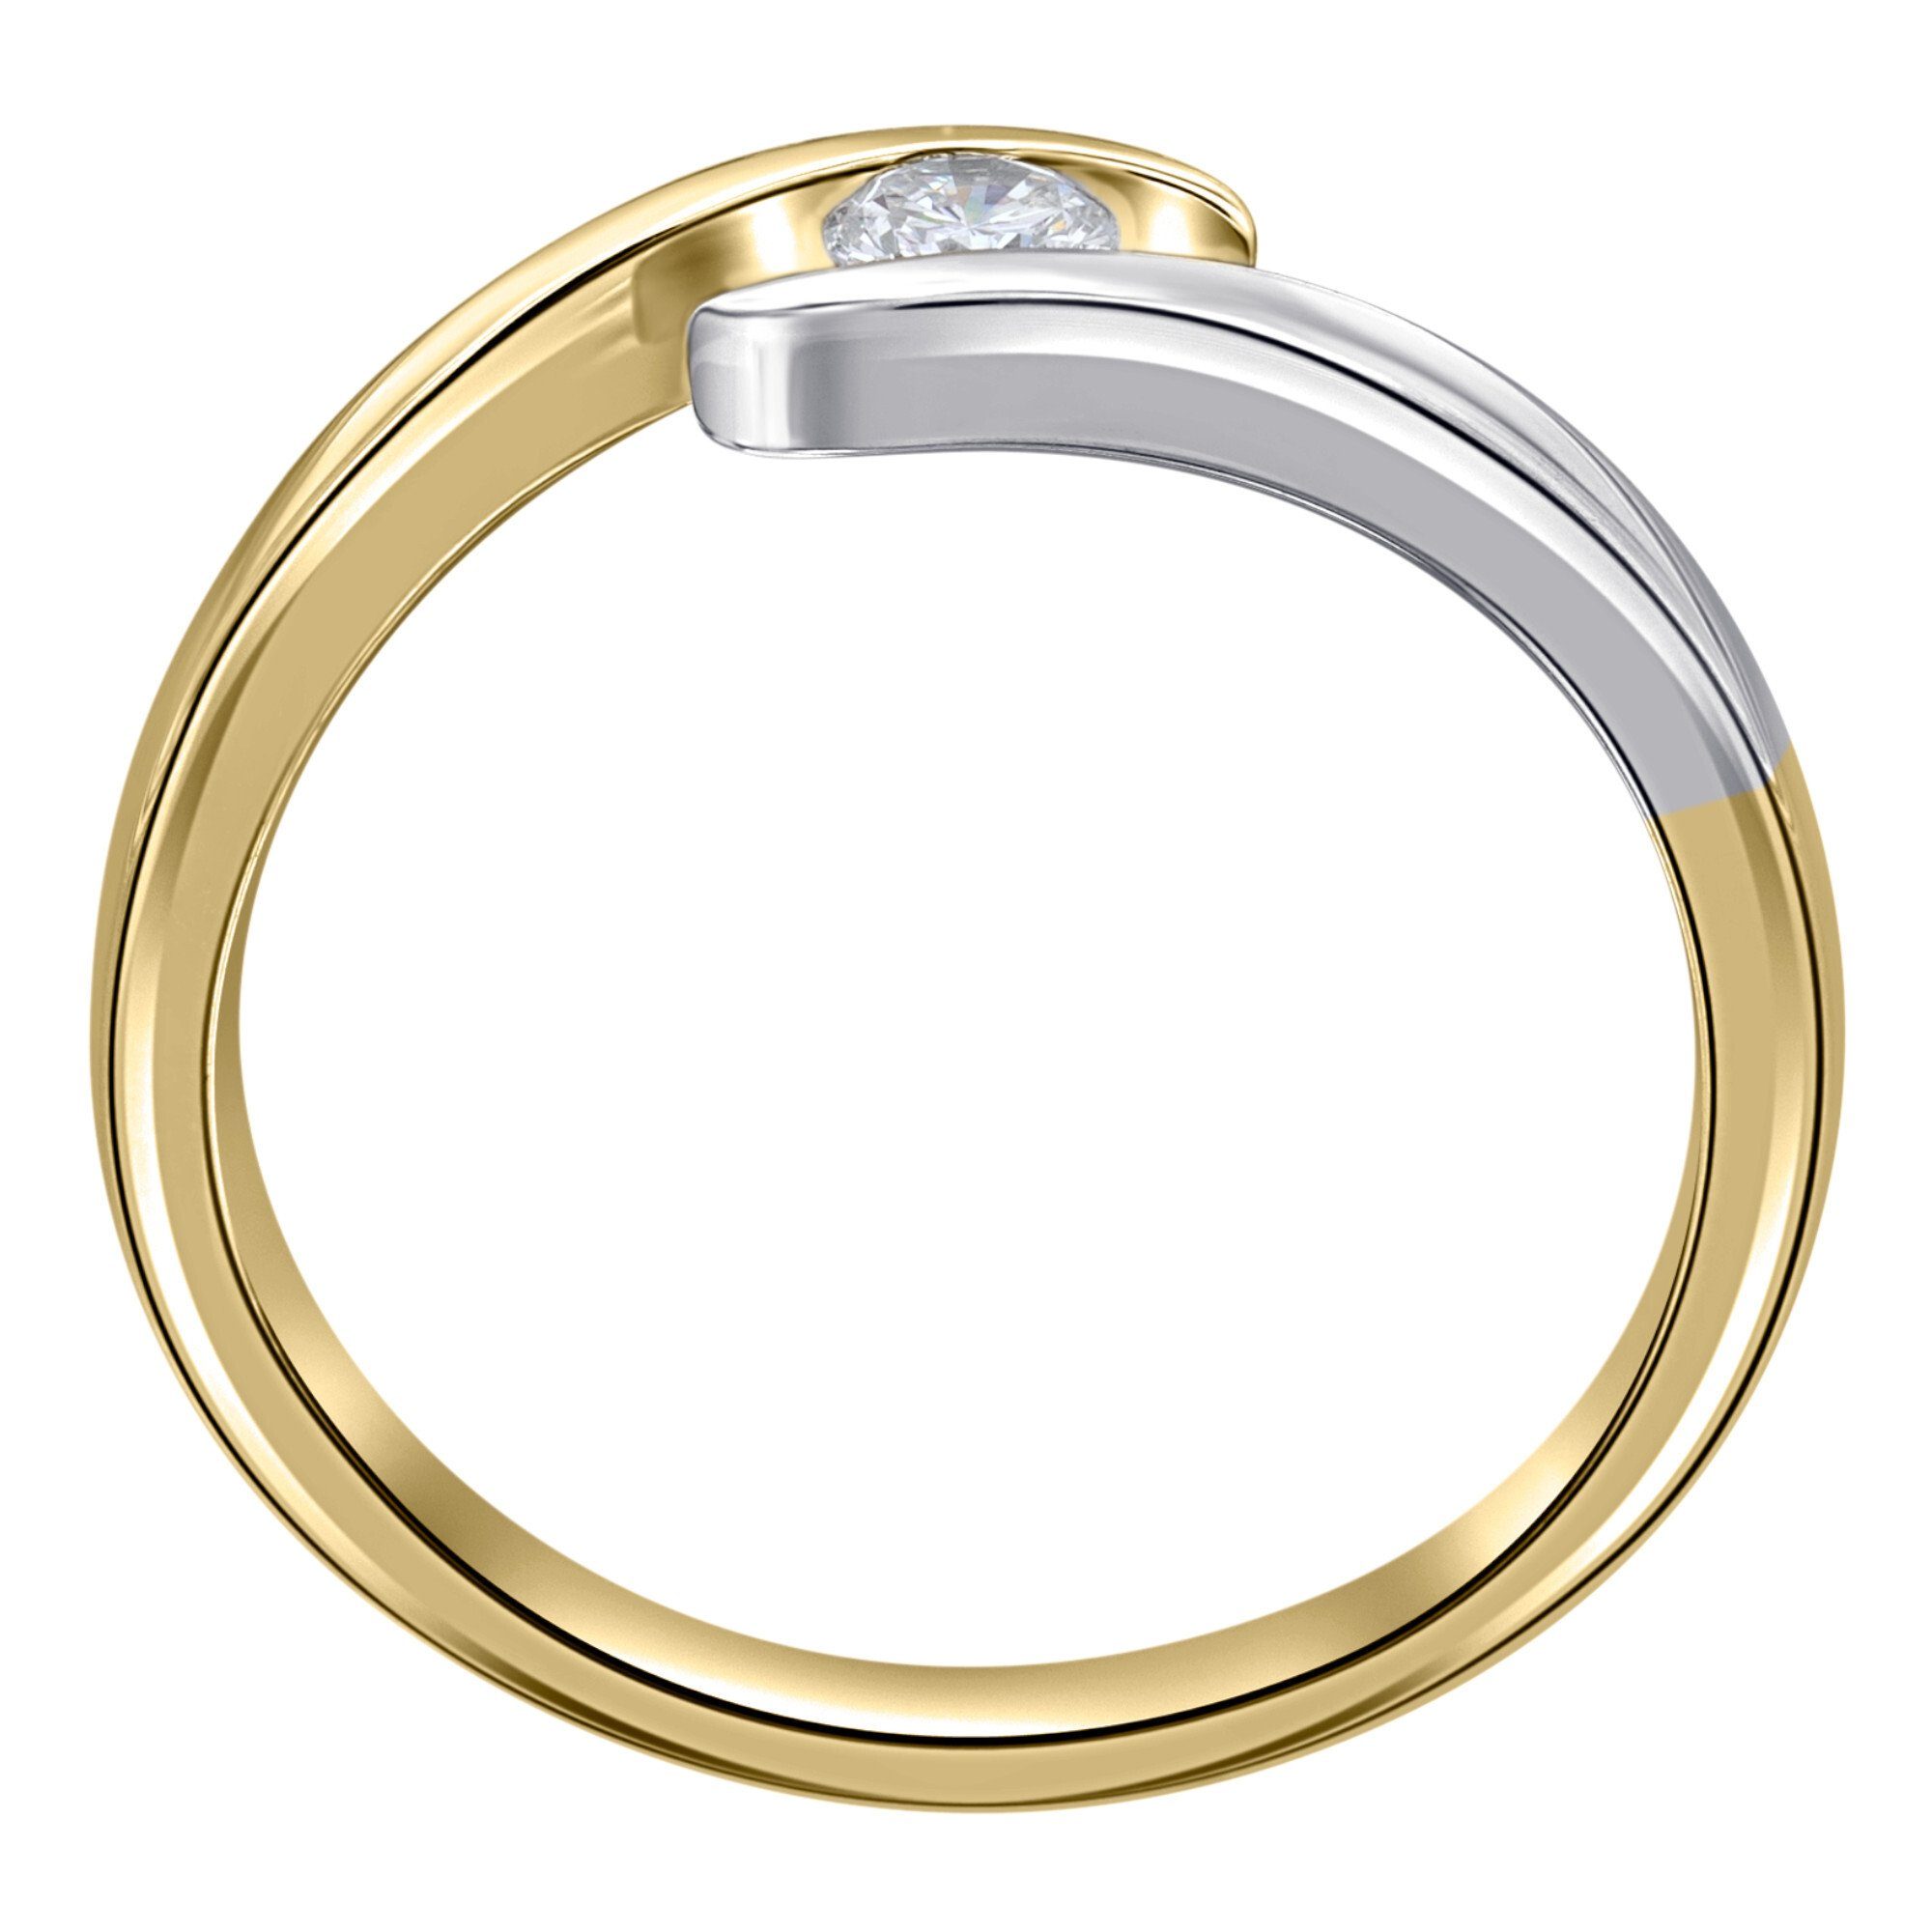 ONE ELEMENT Diamantring 0,10 ct Diamant Brillant Spannfassung Ring aus 585 Gelbgold, Damen Gold Schmuck Spannfassung